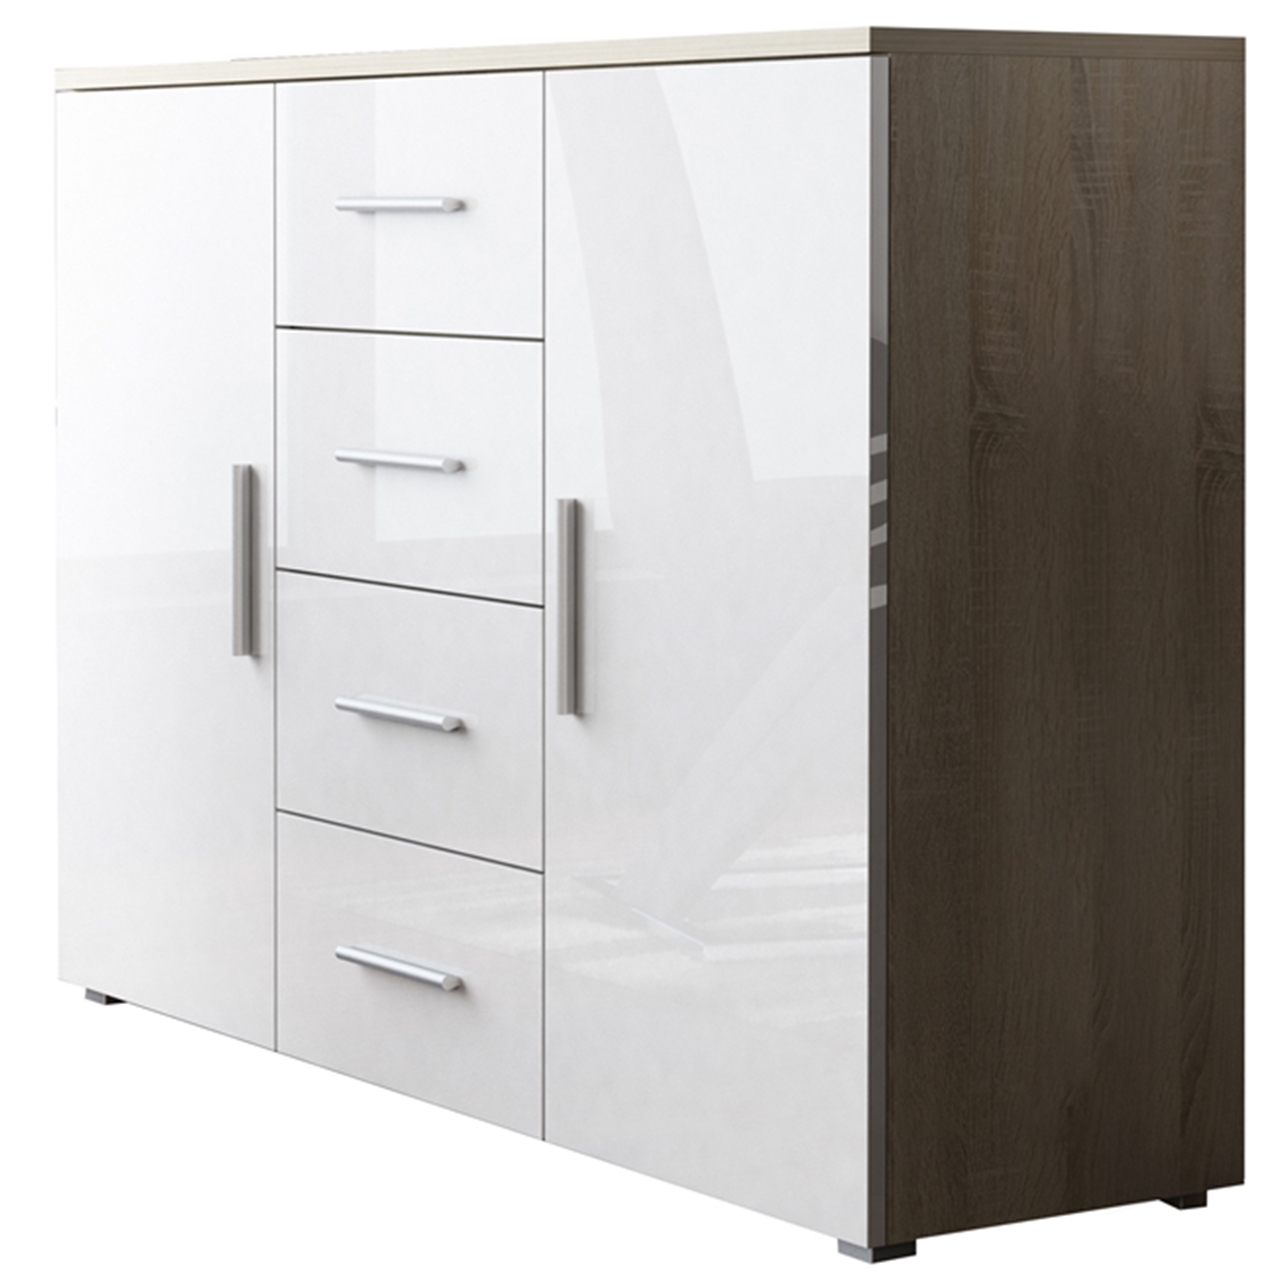 Storage cabinet UNI SOHO SH6E sonoma oak / white gloss